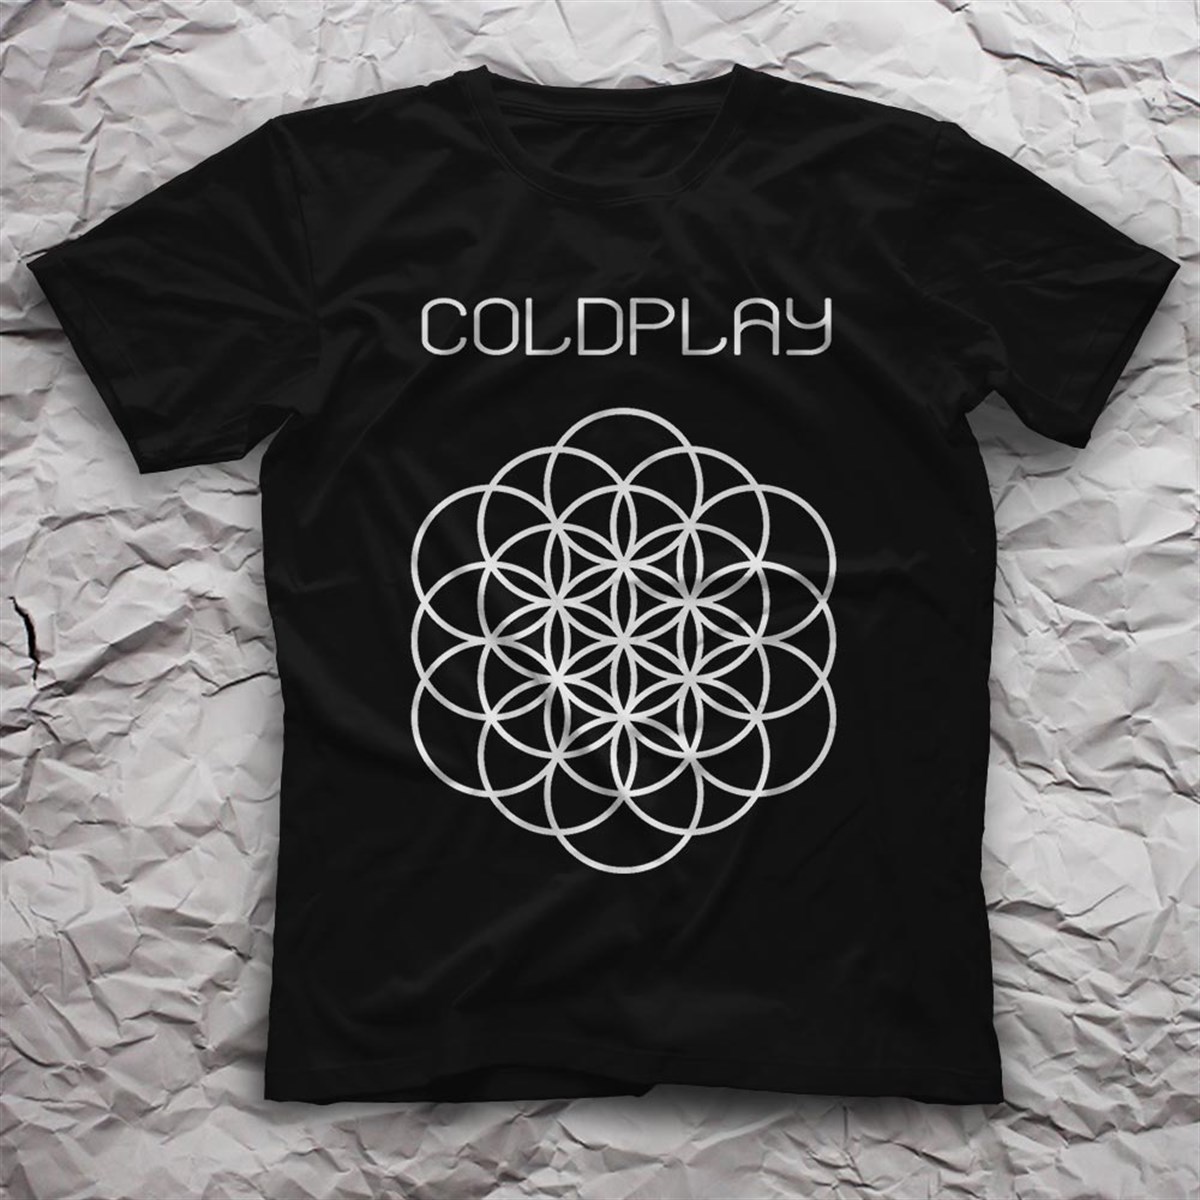 Coldplay ,Music Band ,Unisex Tshirt 05/